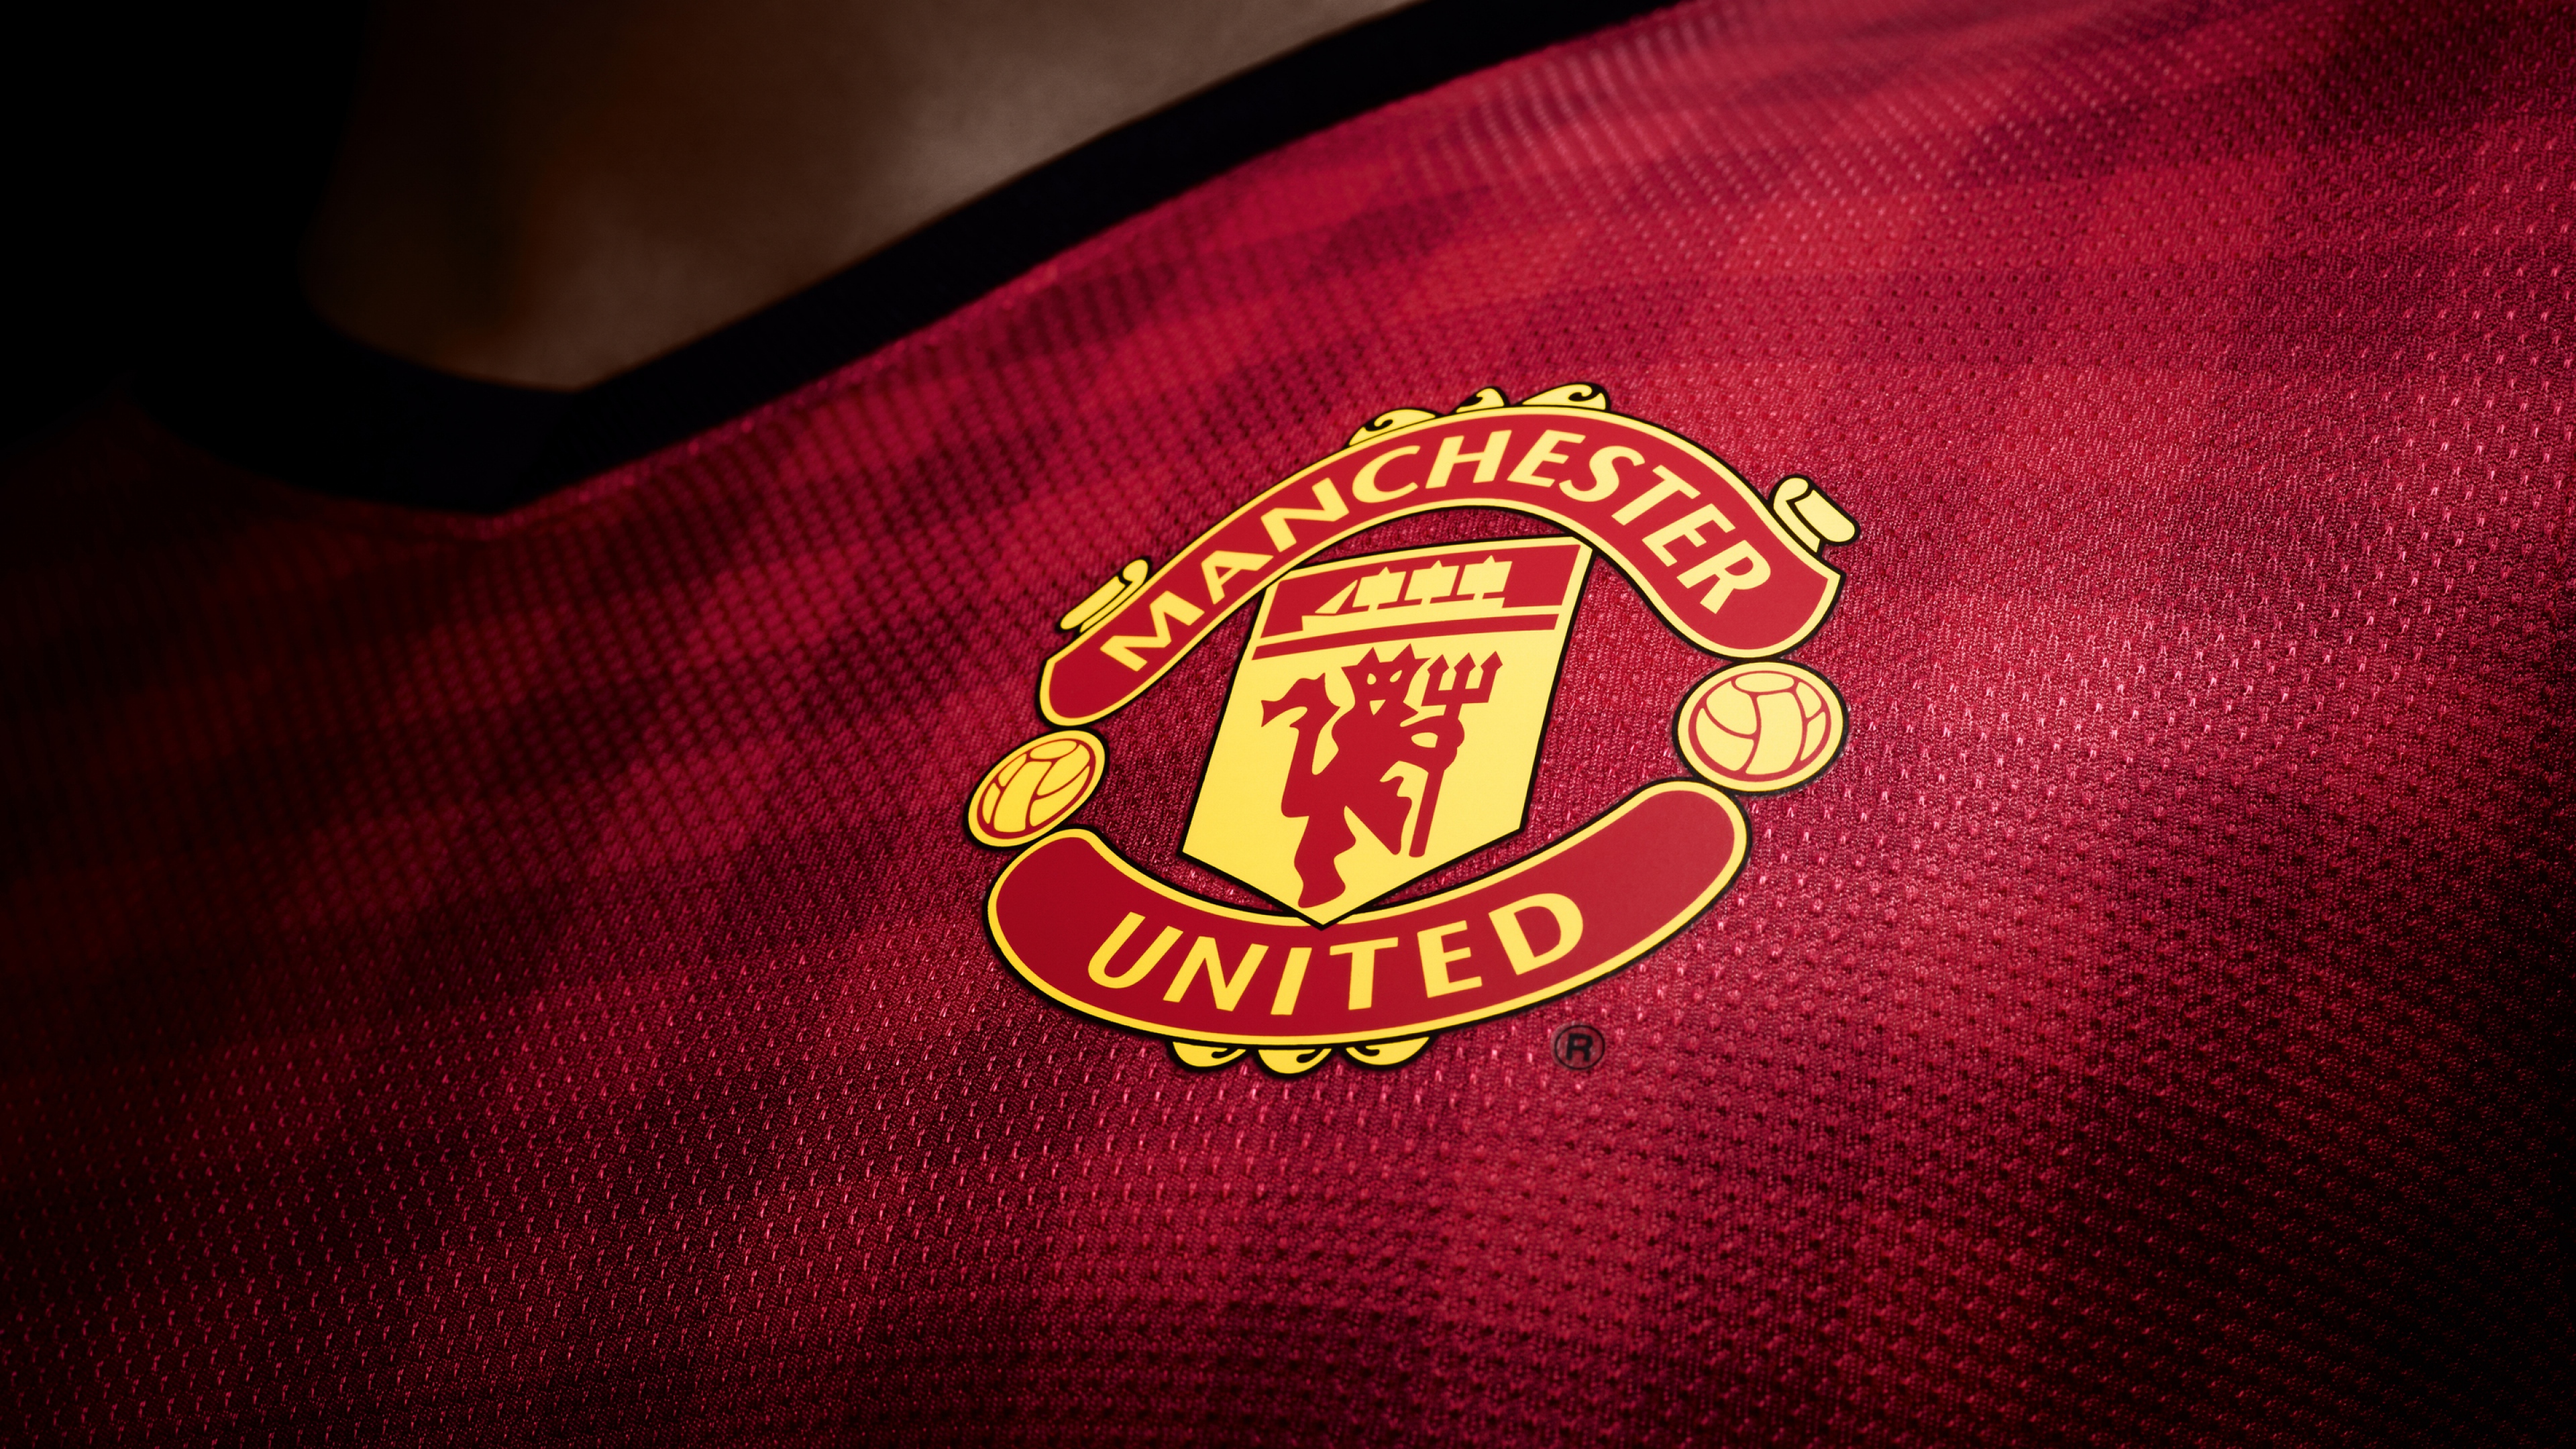 Manchester United Logo 4K Wallpaper cực kỳ ấn tượng và lôi cuốn, đây là sự lựa chọn hoàn hảo cho các tín đồ của đội bóng này. Các chi tiết được thể hiện rõ ràng và sắc nét, cho bạn trải nghiệm thật đã mắt. Hãy tải ngay ảnh nền này để trau chuốt cho danh thiếng của mình.